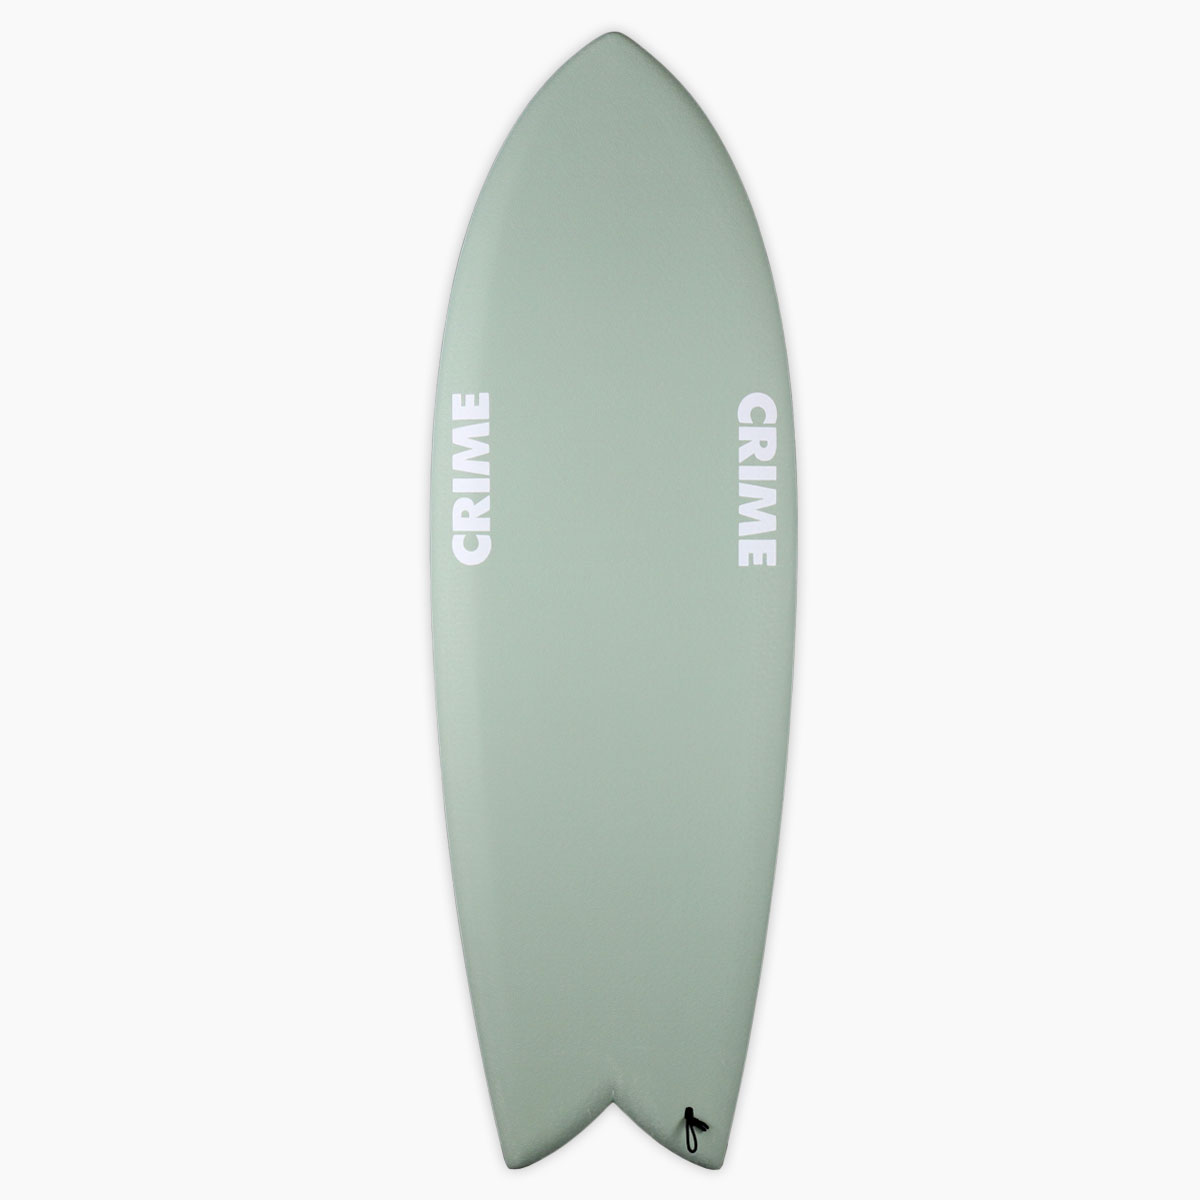 SurfBoardNet / クライム サーフボード カリフォルニア キール 